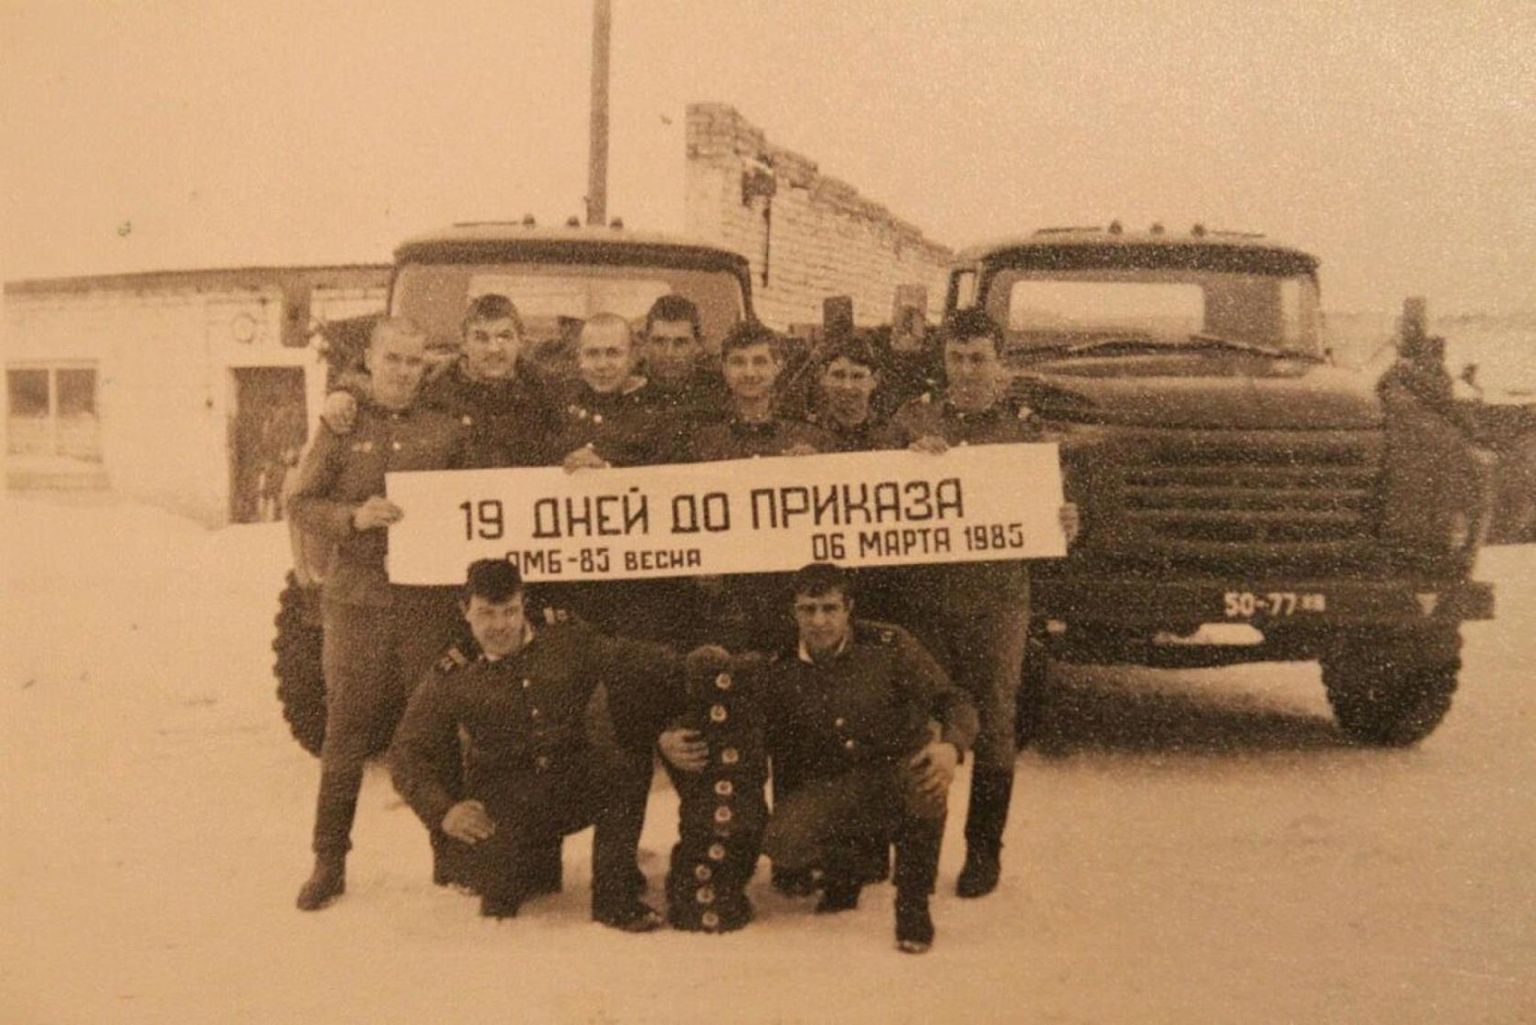 Sõdurid Keila-Joa raketibaasis sel ajal, kui seal teenis Nurali Davlat ja millest räägib Postimehe lugu. Sõduritel on käes plakat, millele on kirjutatud, et neil on jäänud 19 päeva ajateenistuse lõpuni 1985. aasta märtsis. 